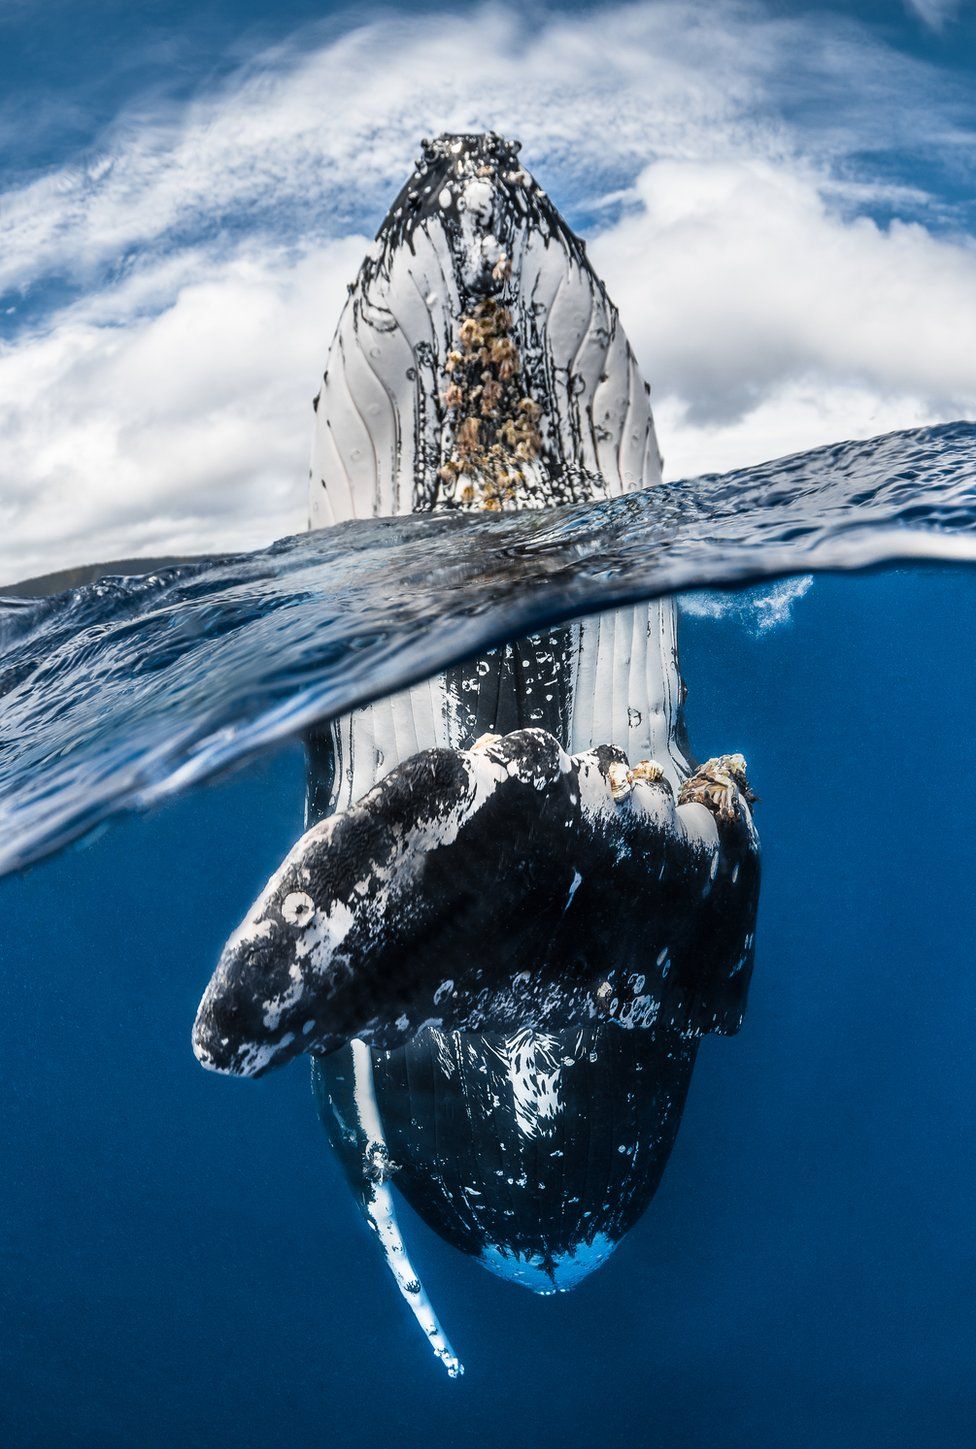 Bir balina gözetleme pozisyonu aldığında, sudan dik bir şekilde çıkar ve o şekilde bir süre kalır. Greg Lecoeur, bu kambur balinayı göğüs yüzgeci kameraya dönükken yakalamış.